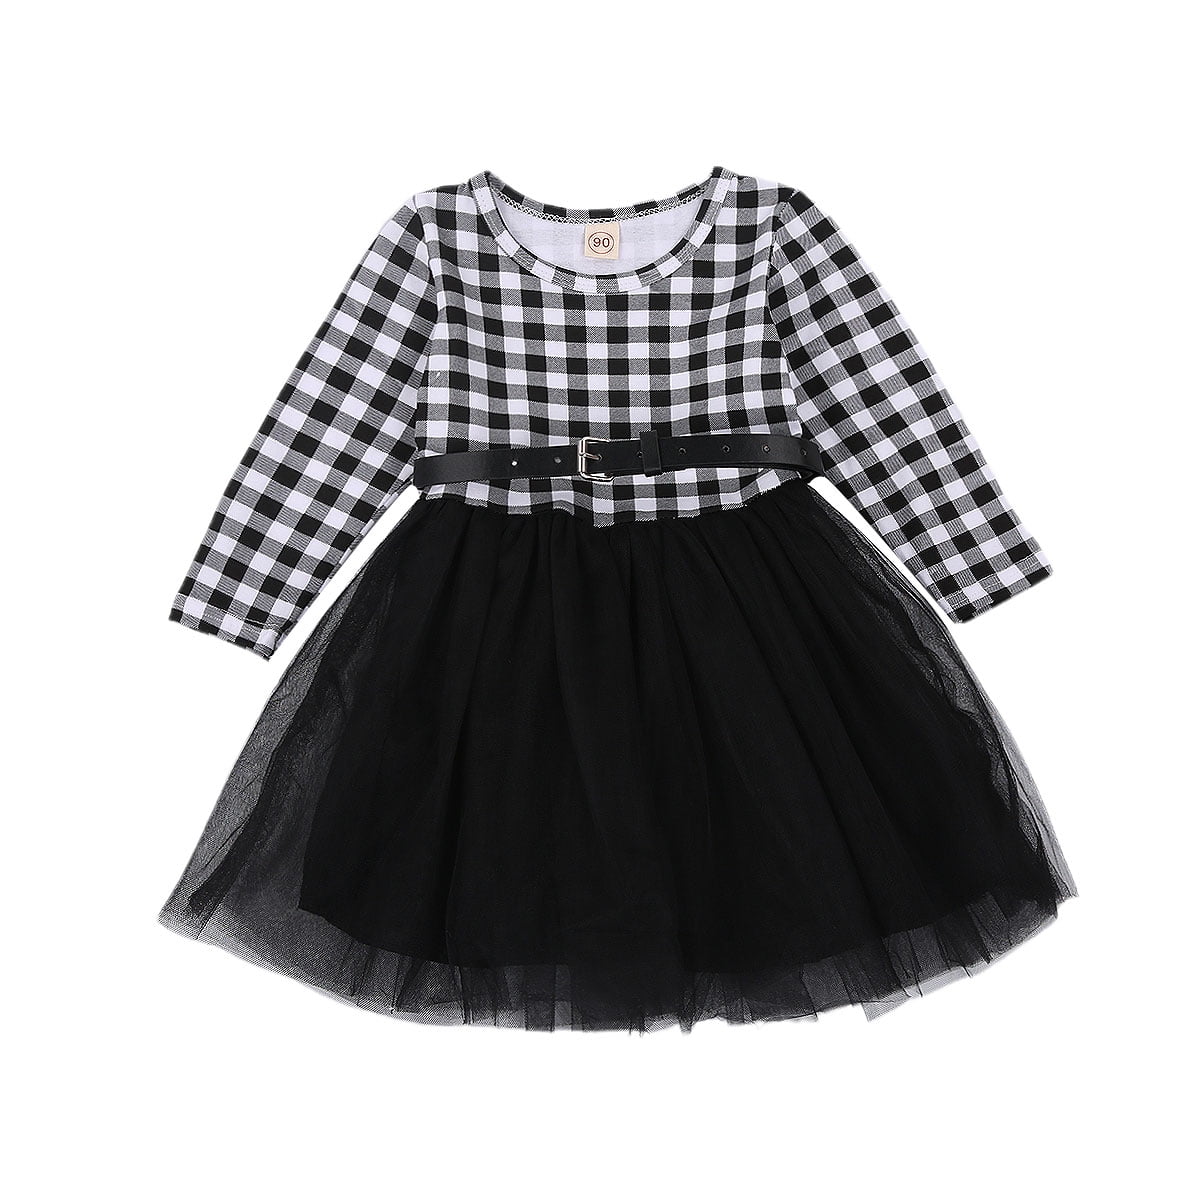 Buy > black & white check dress > in stock